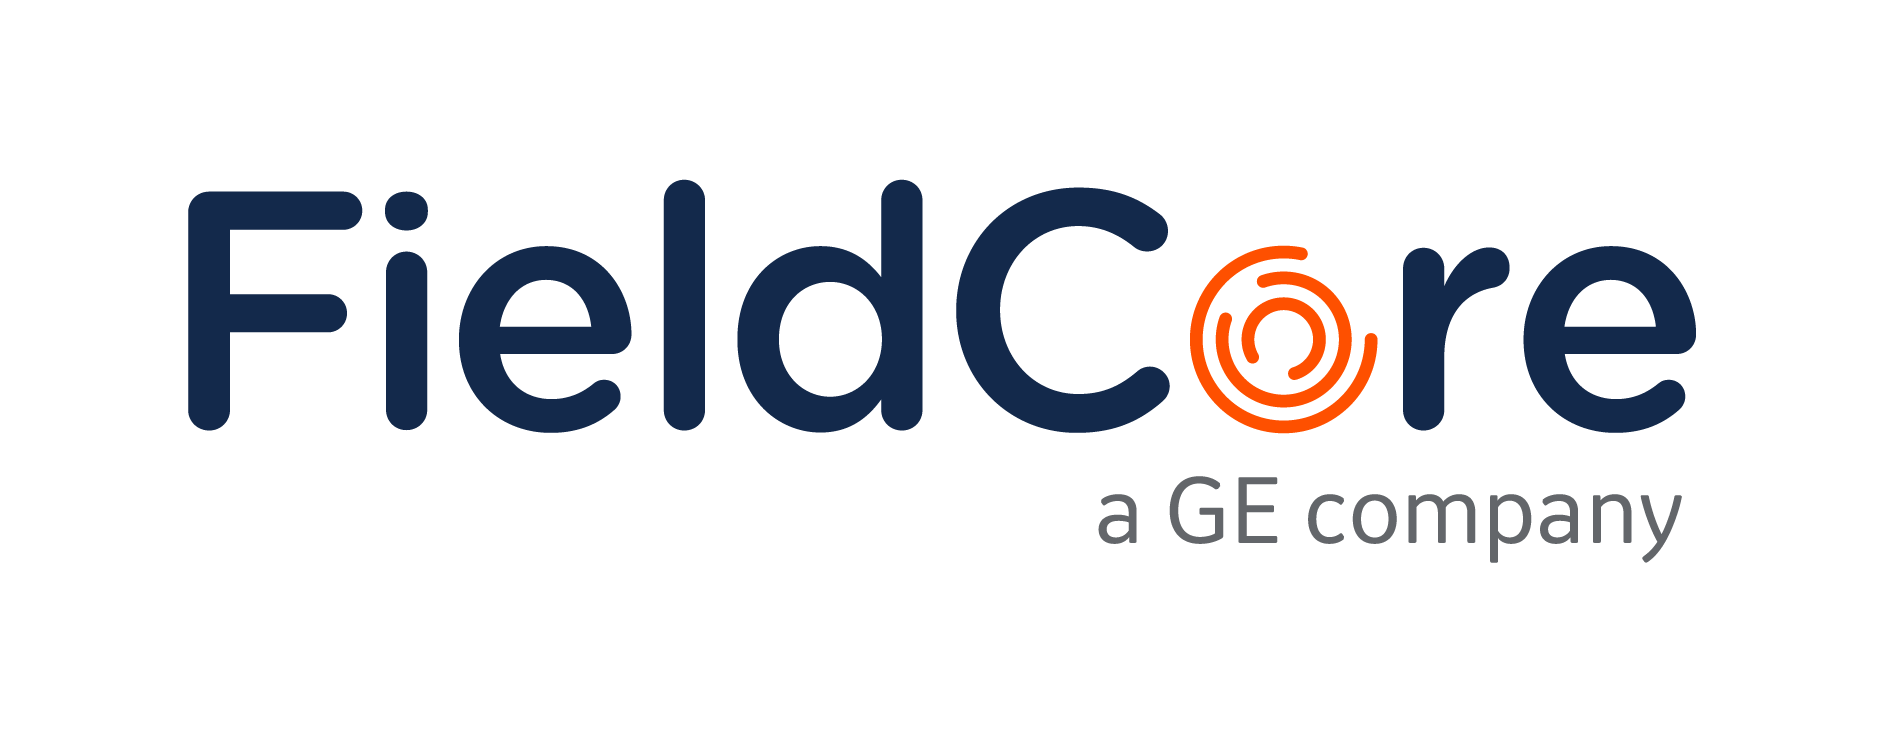 GE Company Logo - FieldCore GE Company. Field Service Solutions, Field Engineering